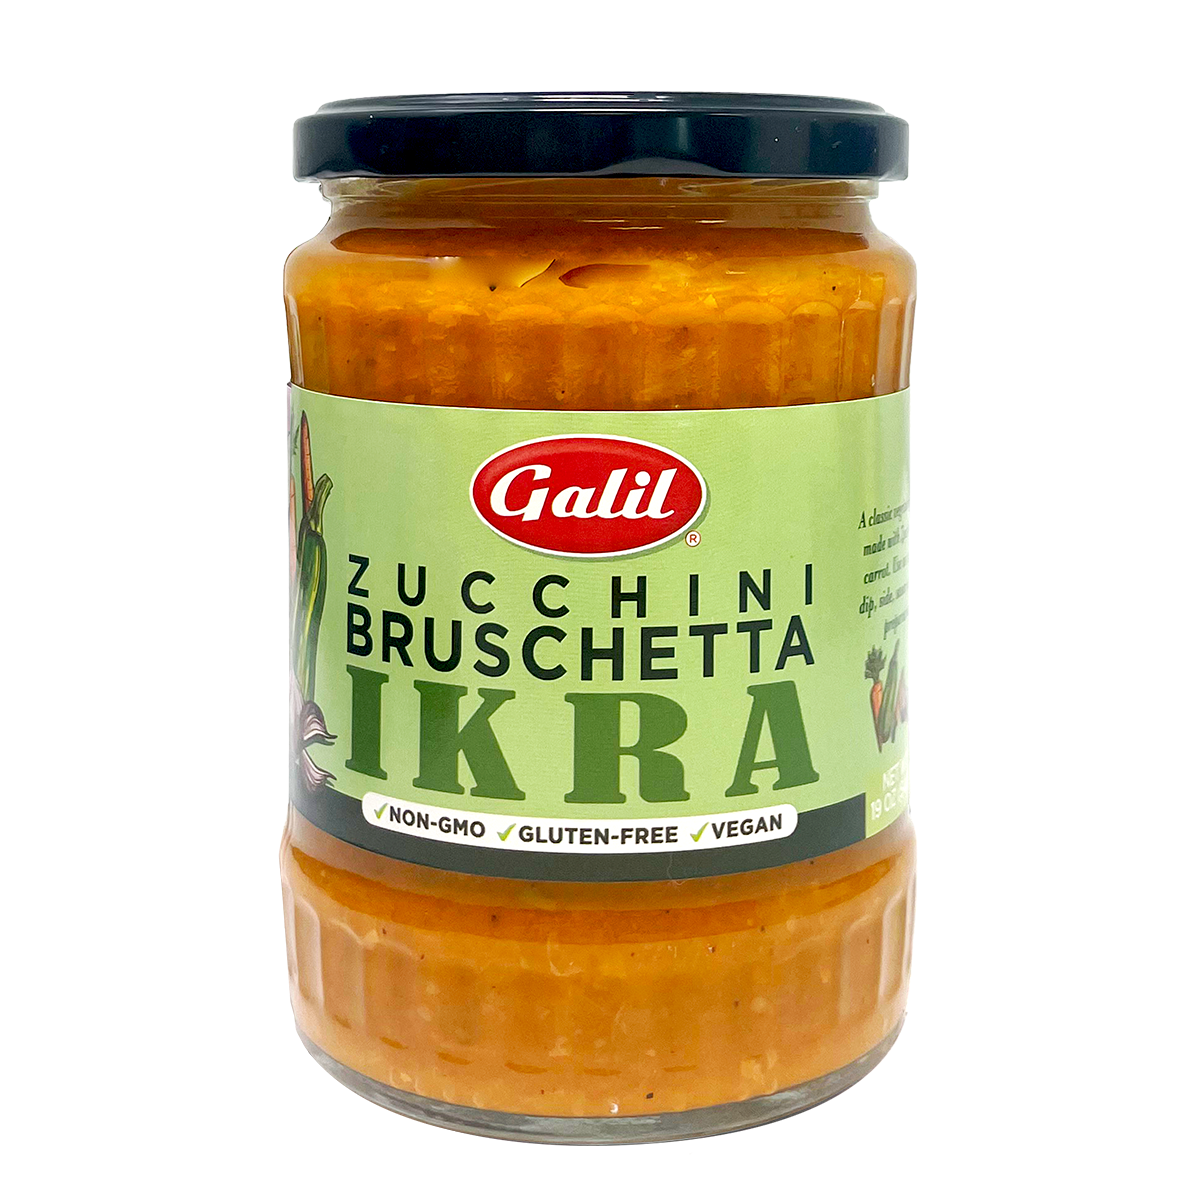 Zucchini Ikra | Zucchini Bruschetta | 19 oz | Galil